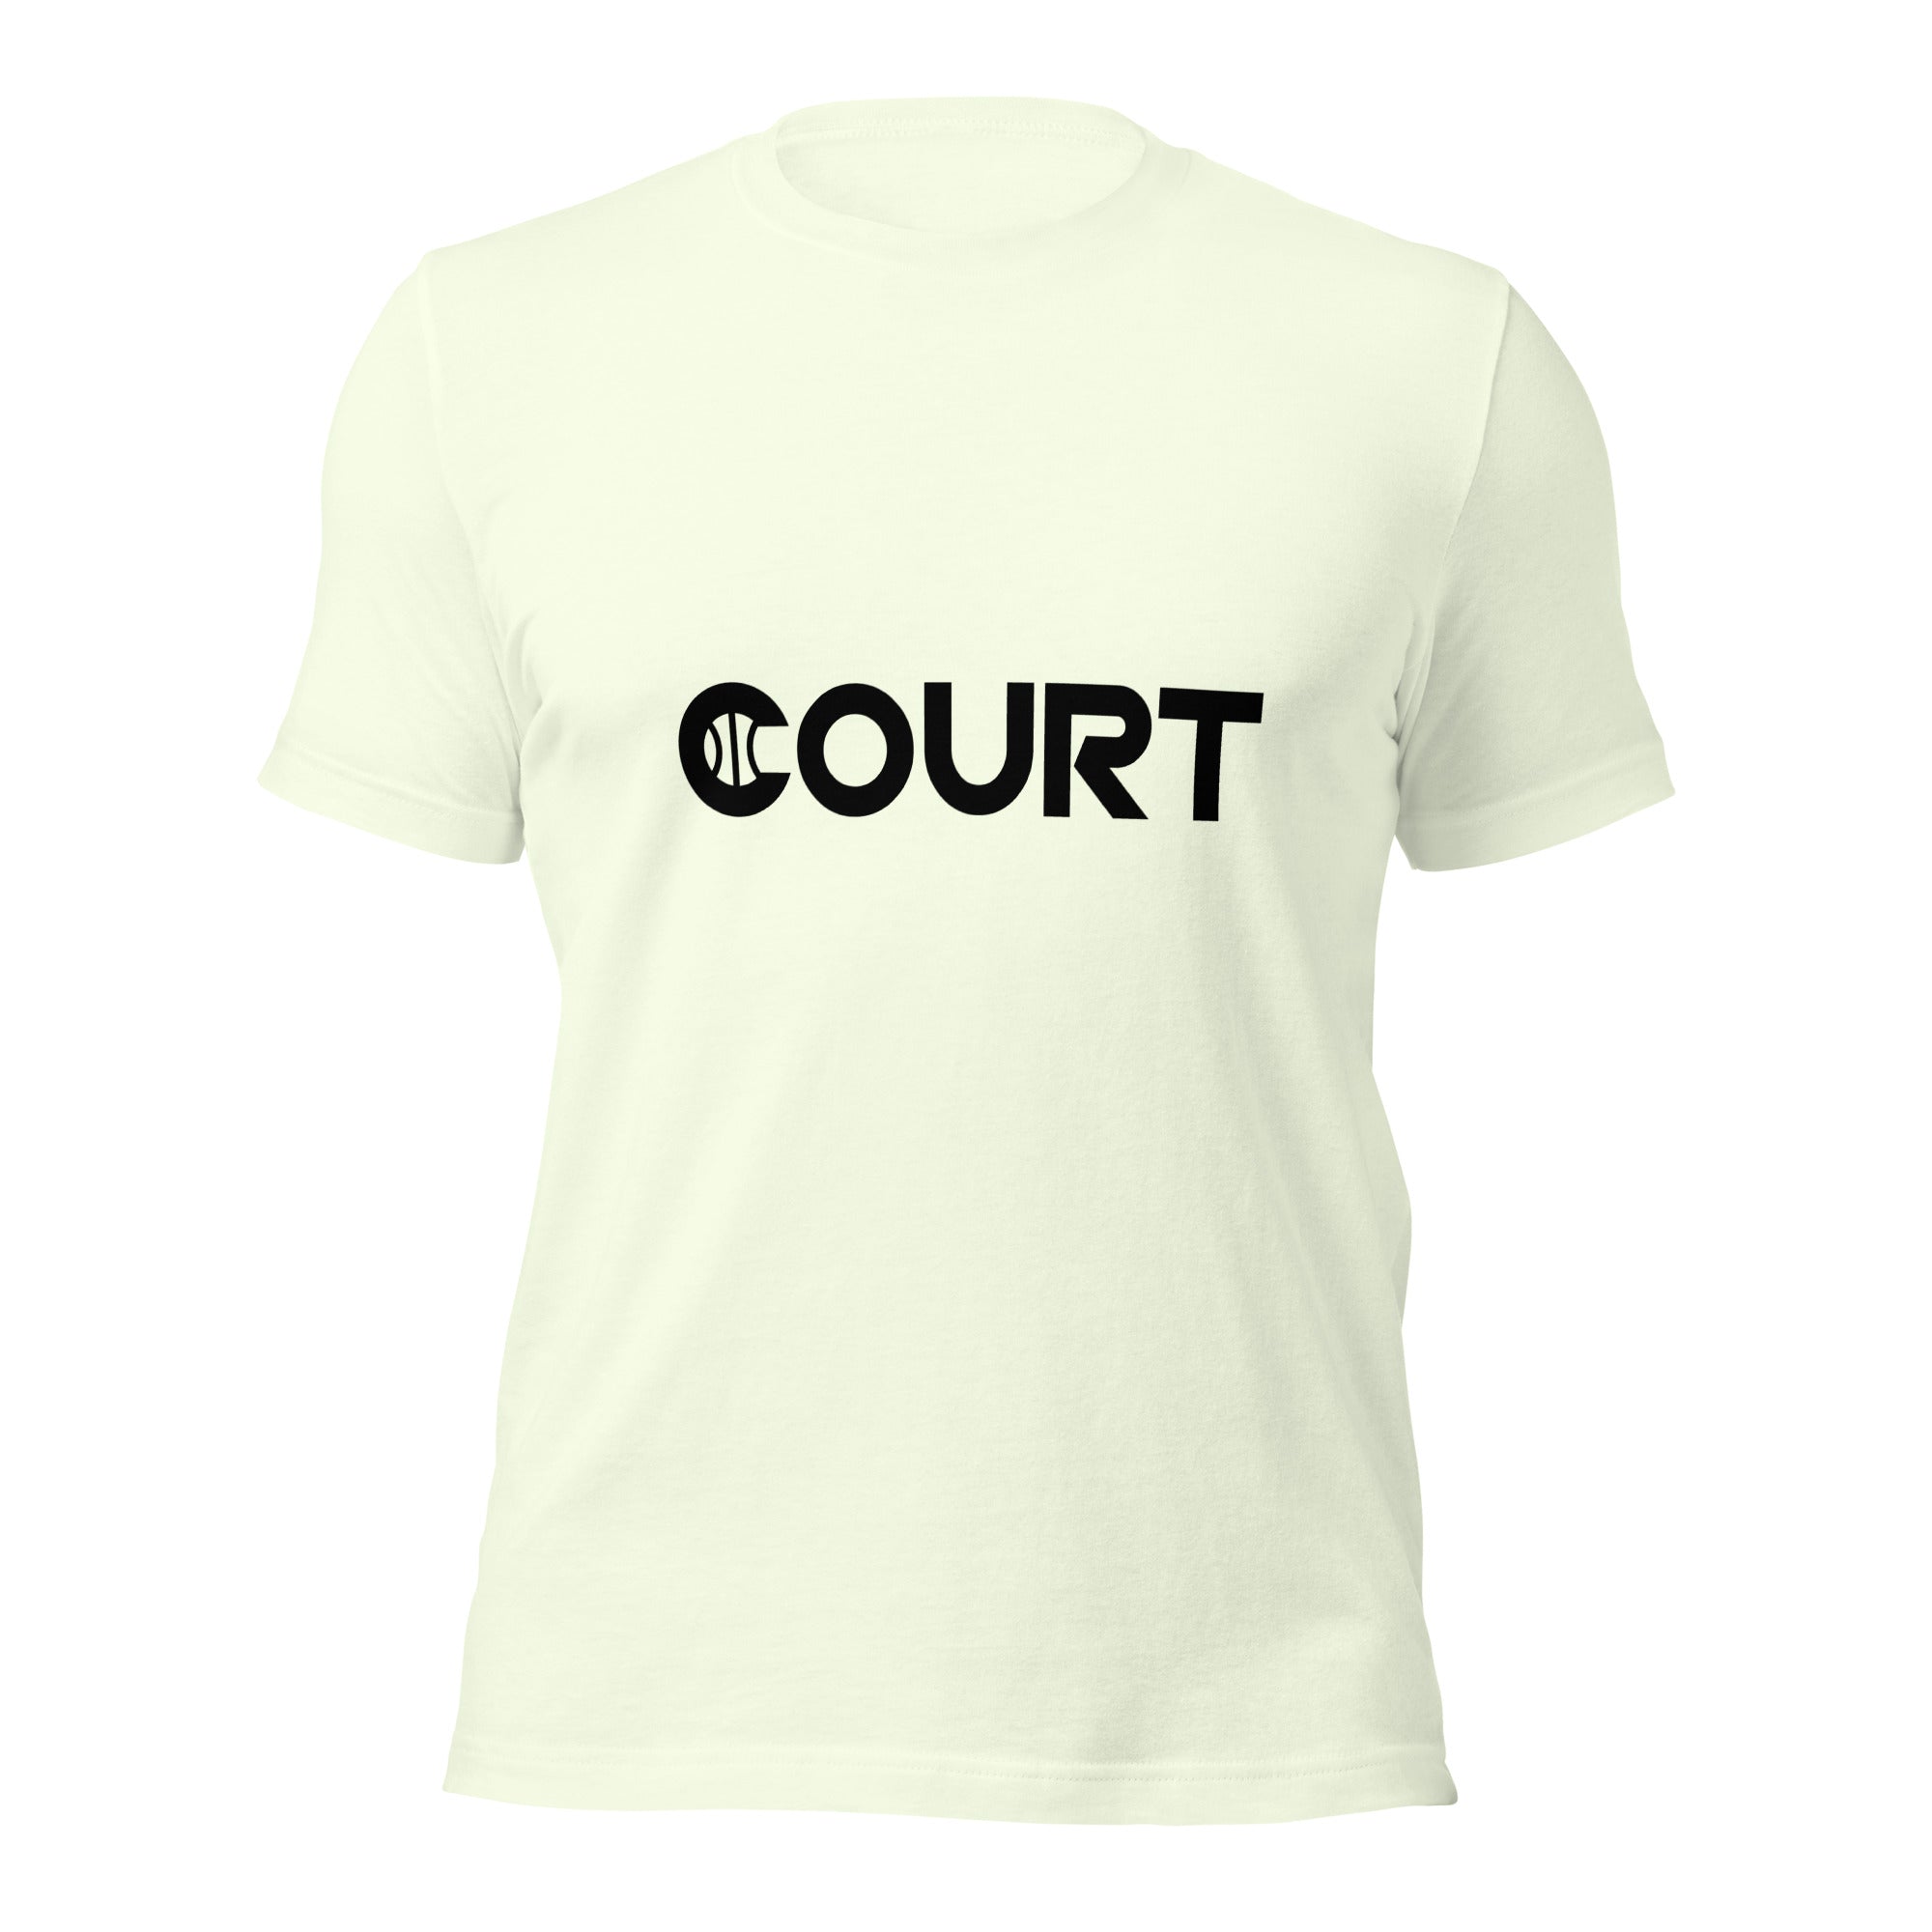 Court Black signature - unisex